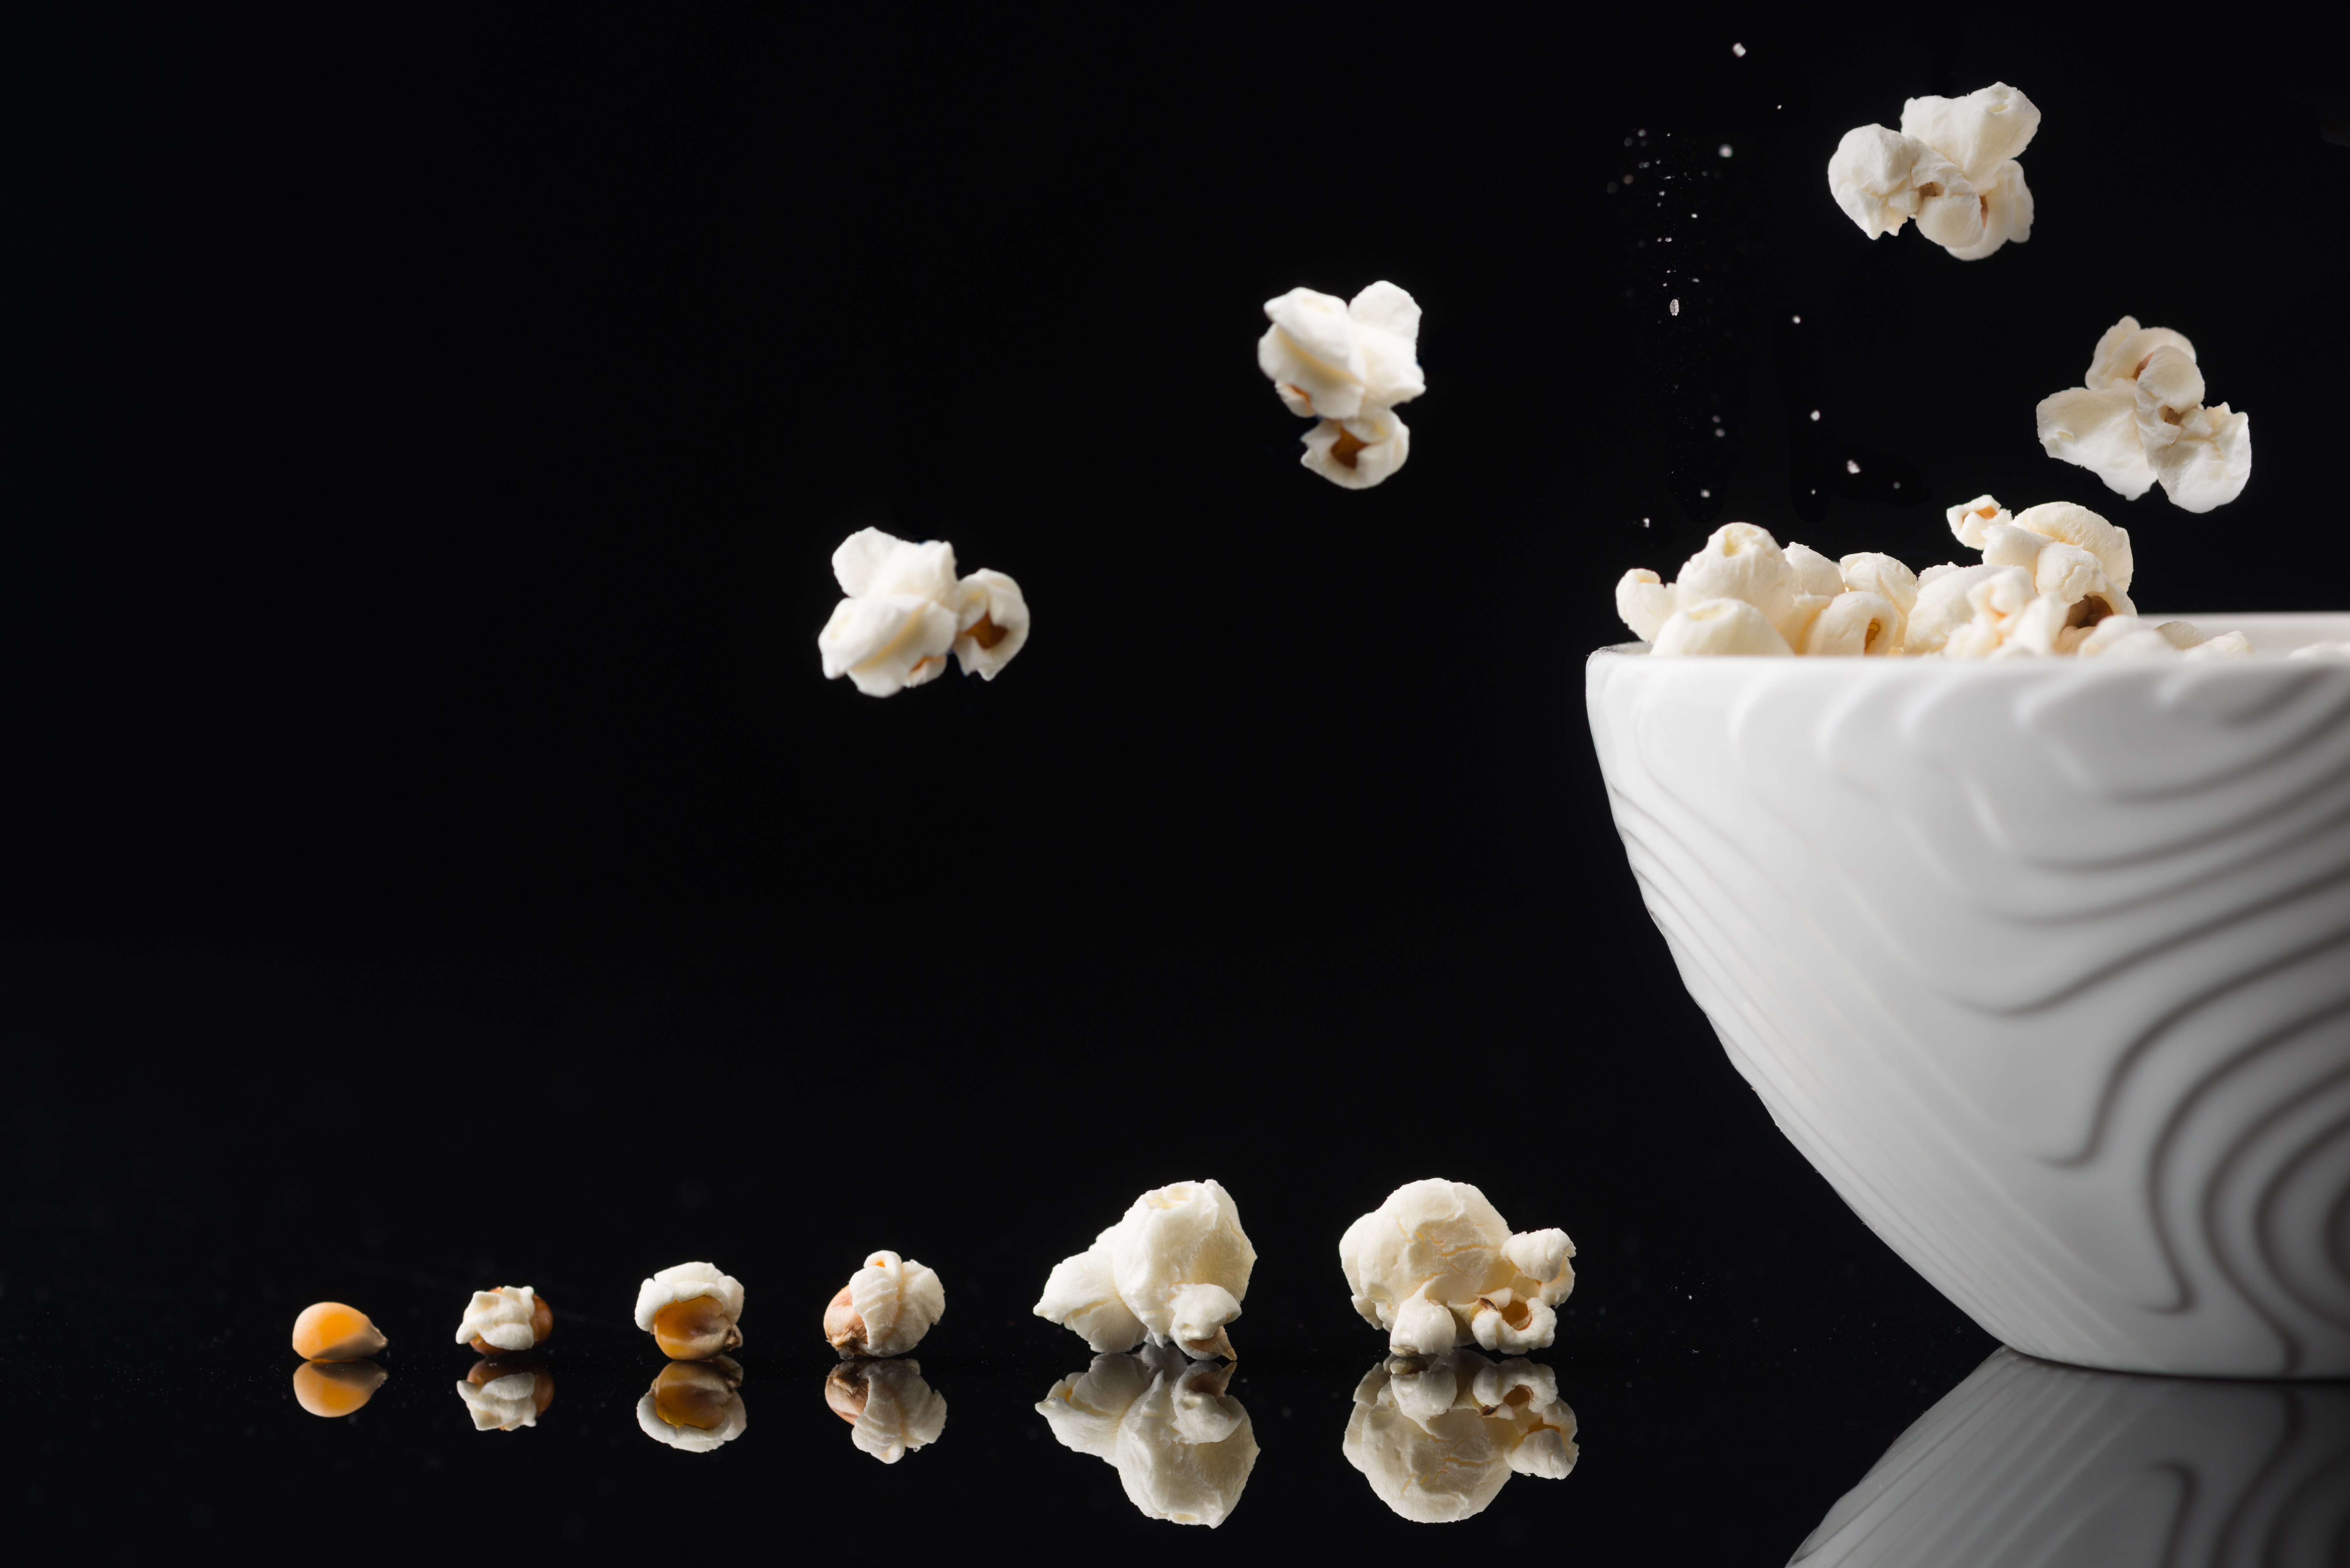 Popcorn increasing in size